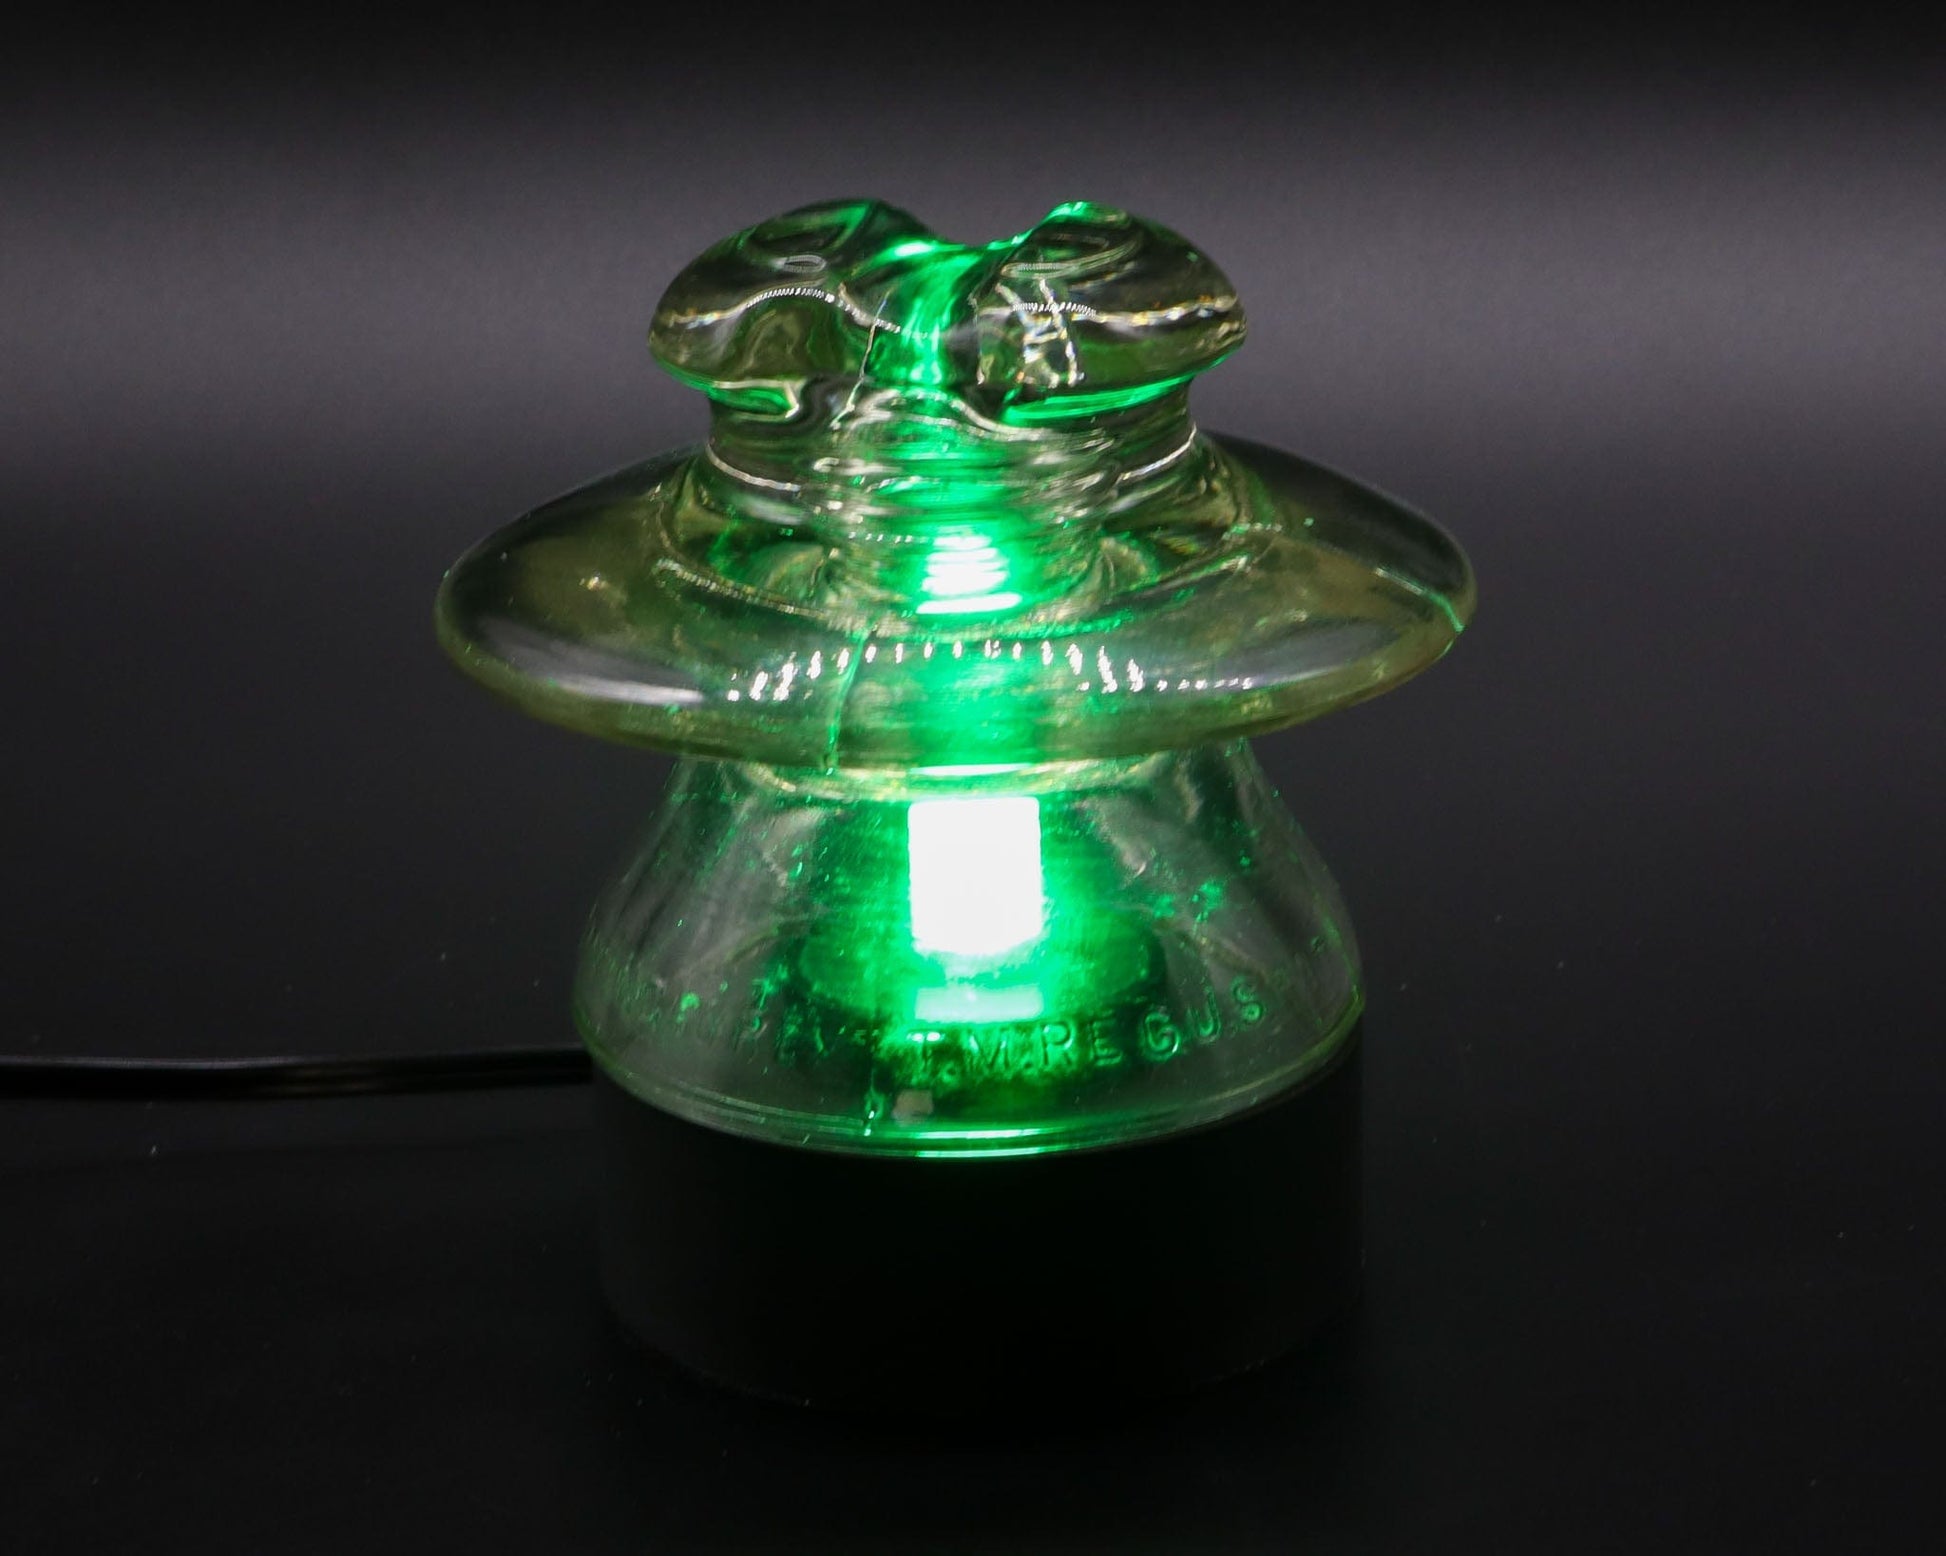 LightAndTimeArt Lamp base Lamp Base for CORNING PYREX CD320 Glass Insulators